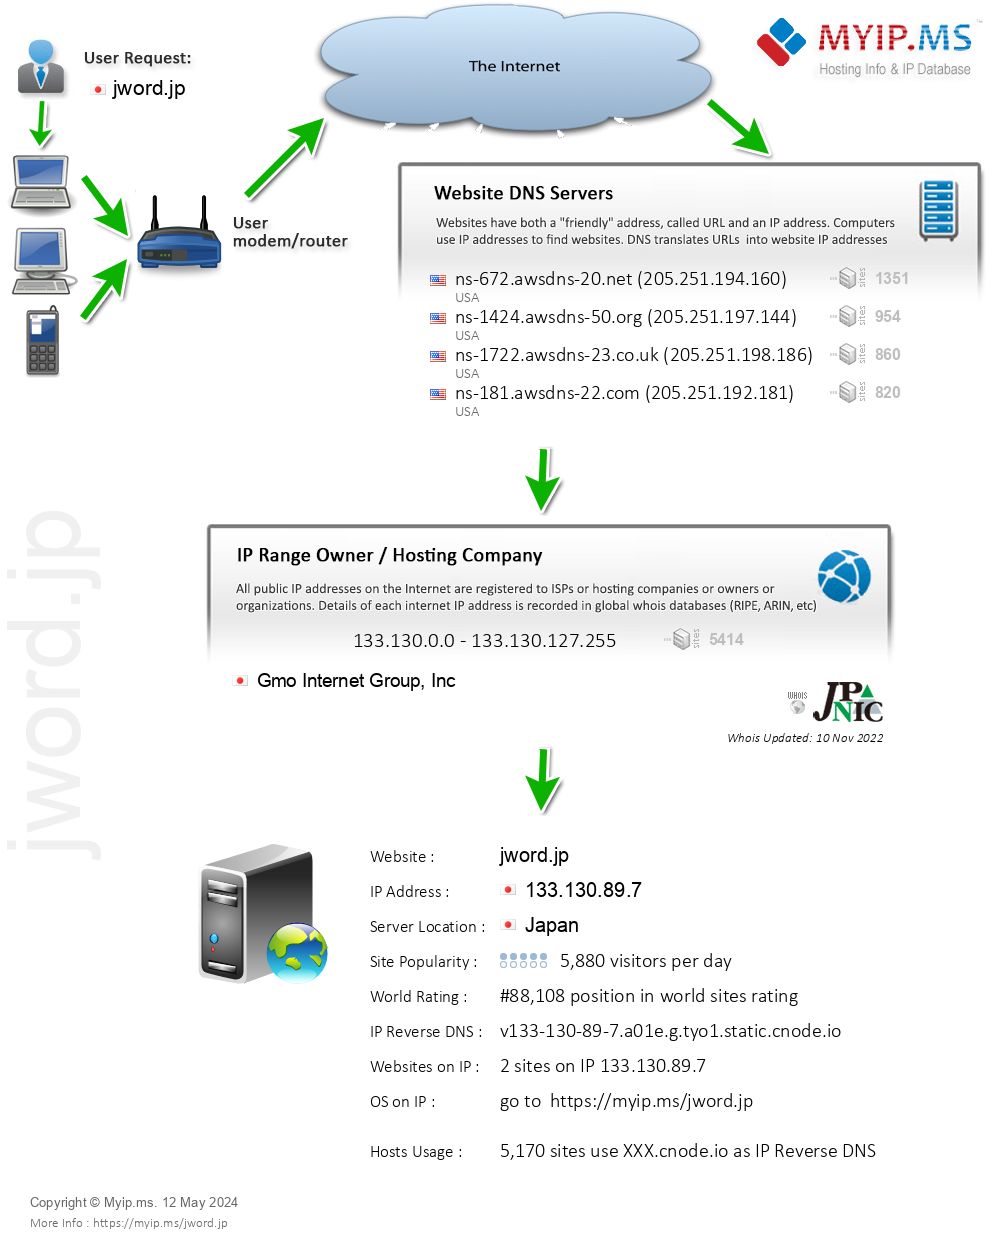 Jword.jp - Website Hosting Visual IP Diagram